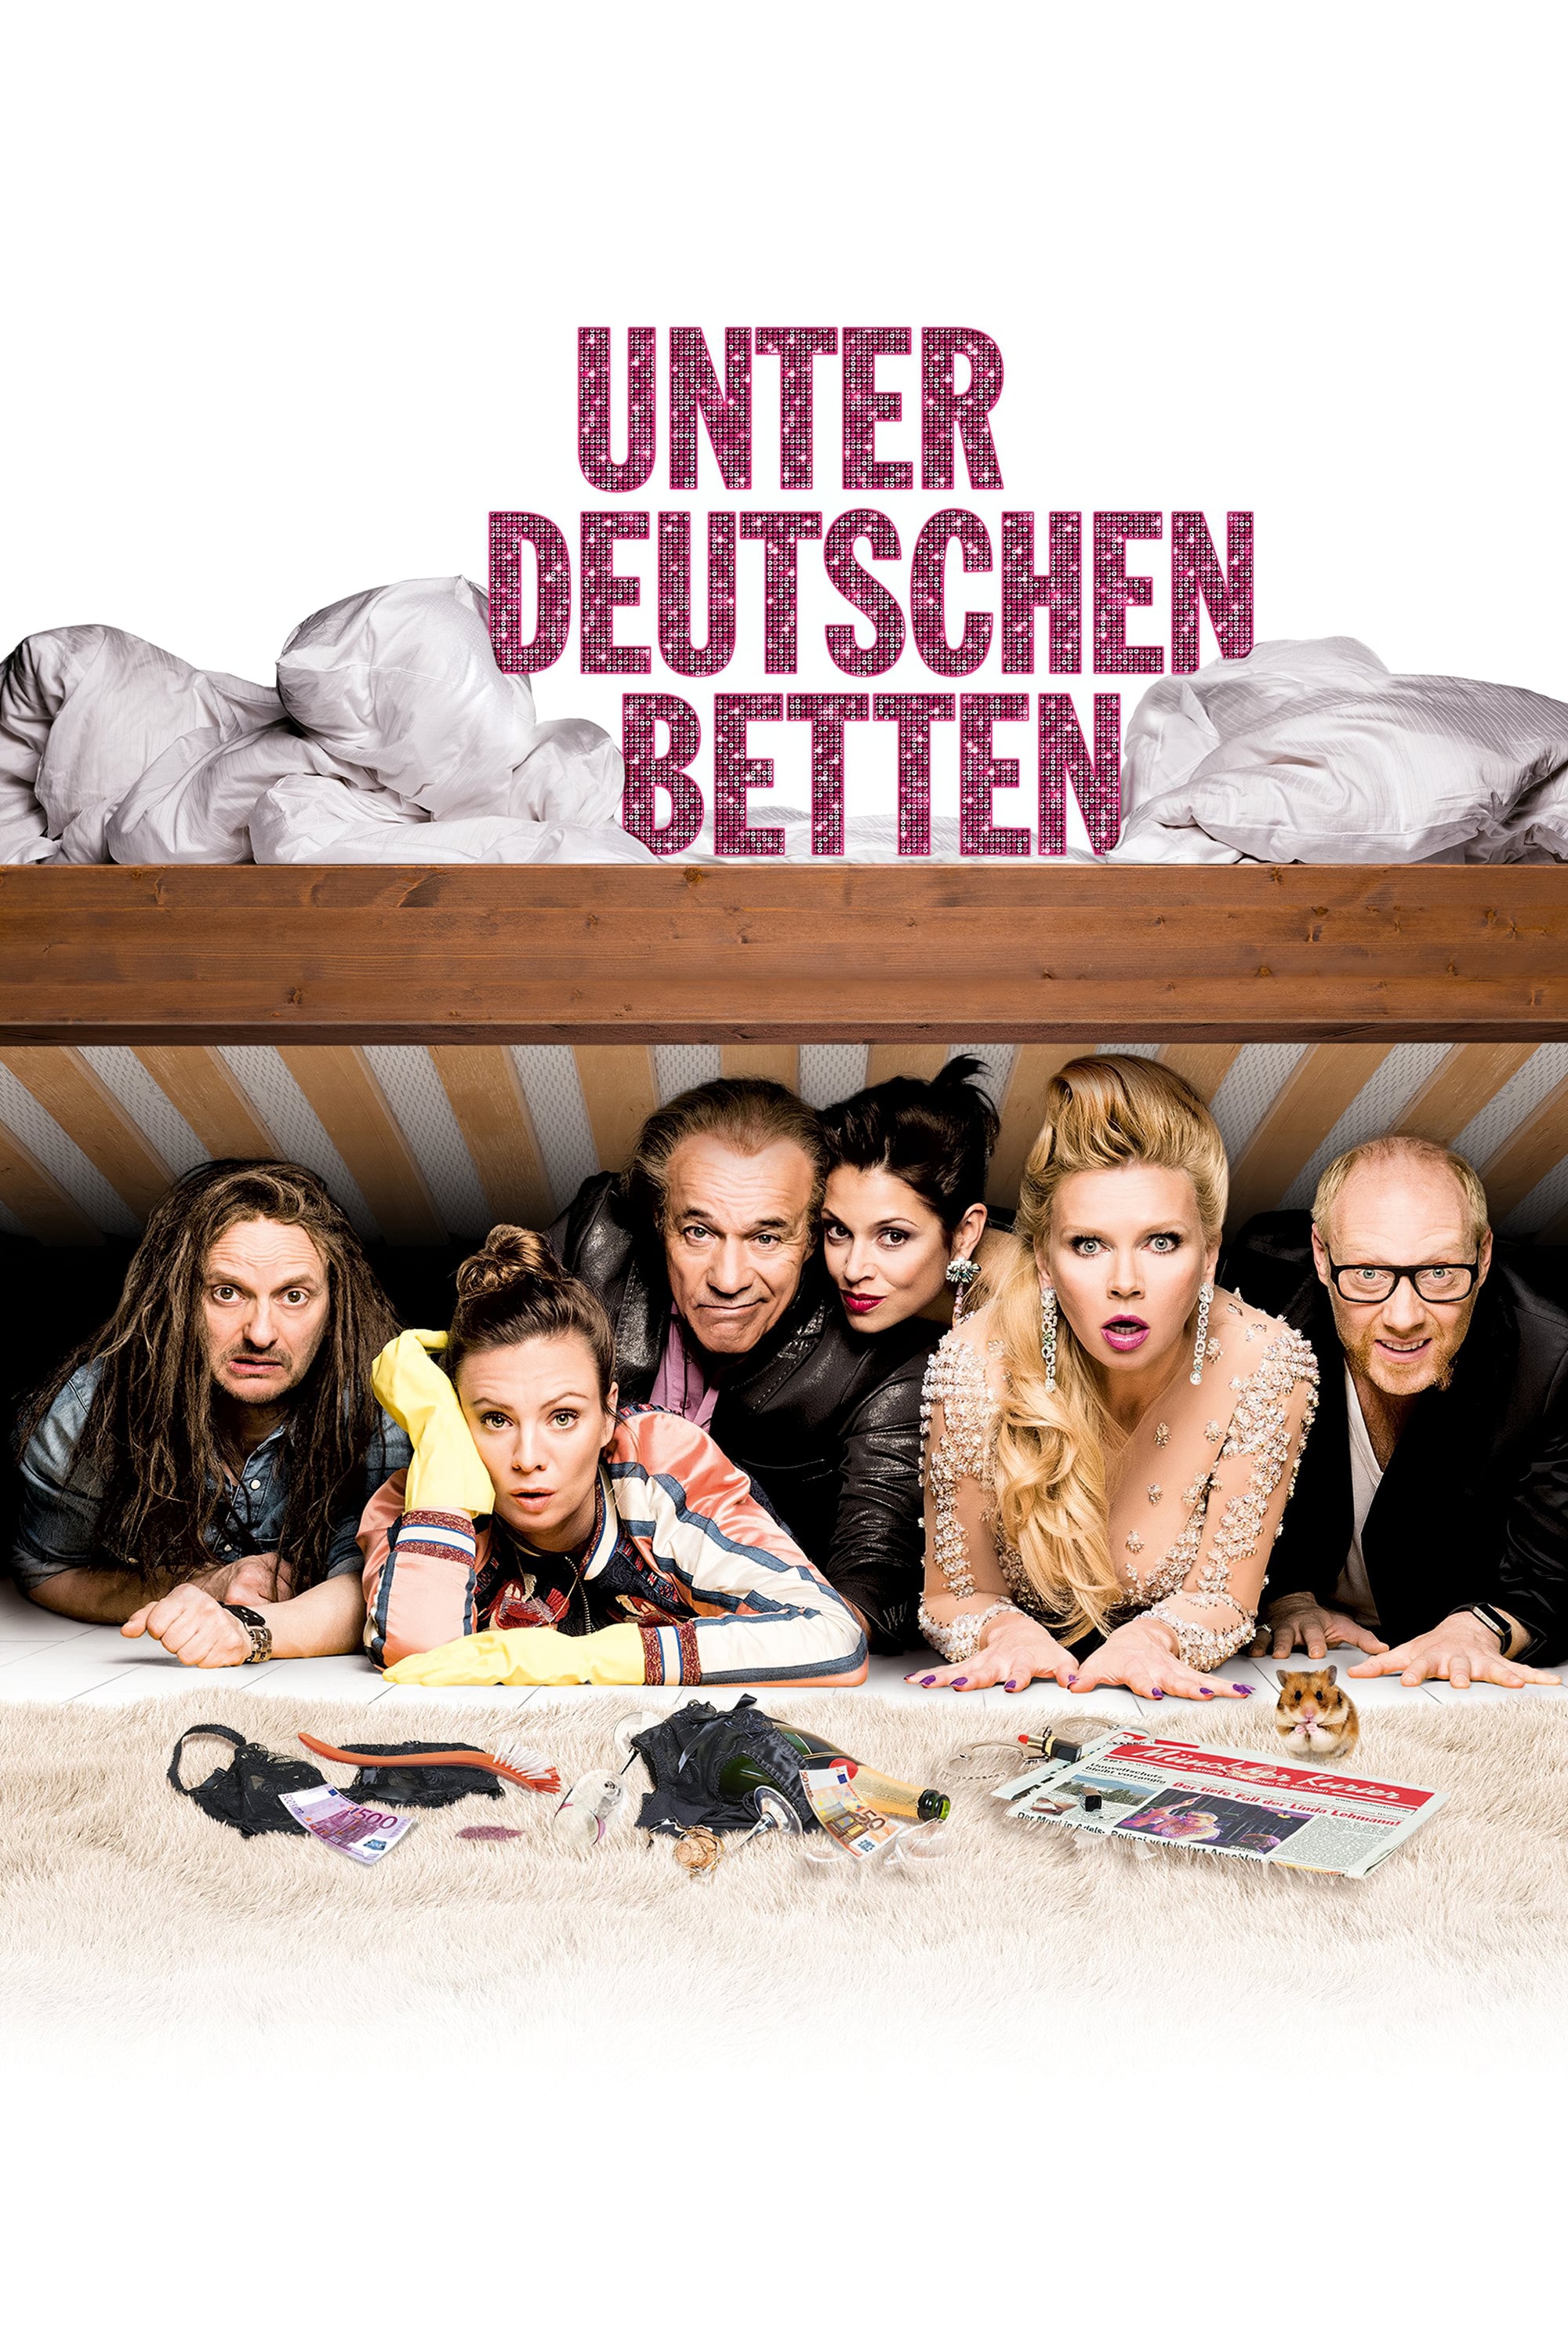 Unter deutschen Betten (2017)